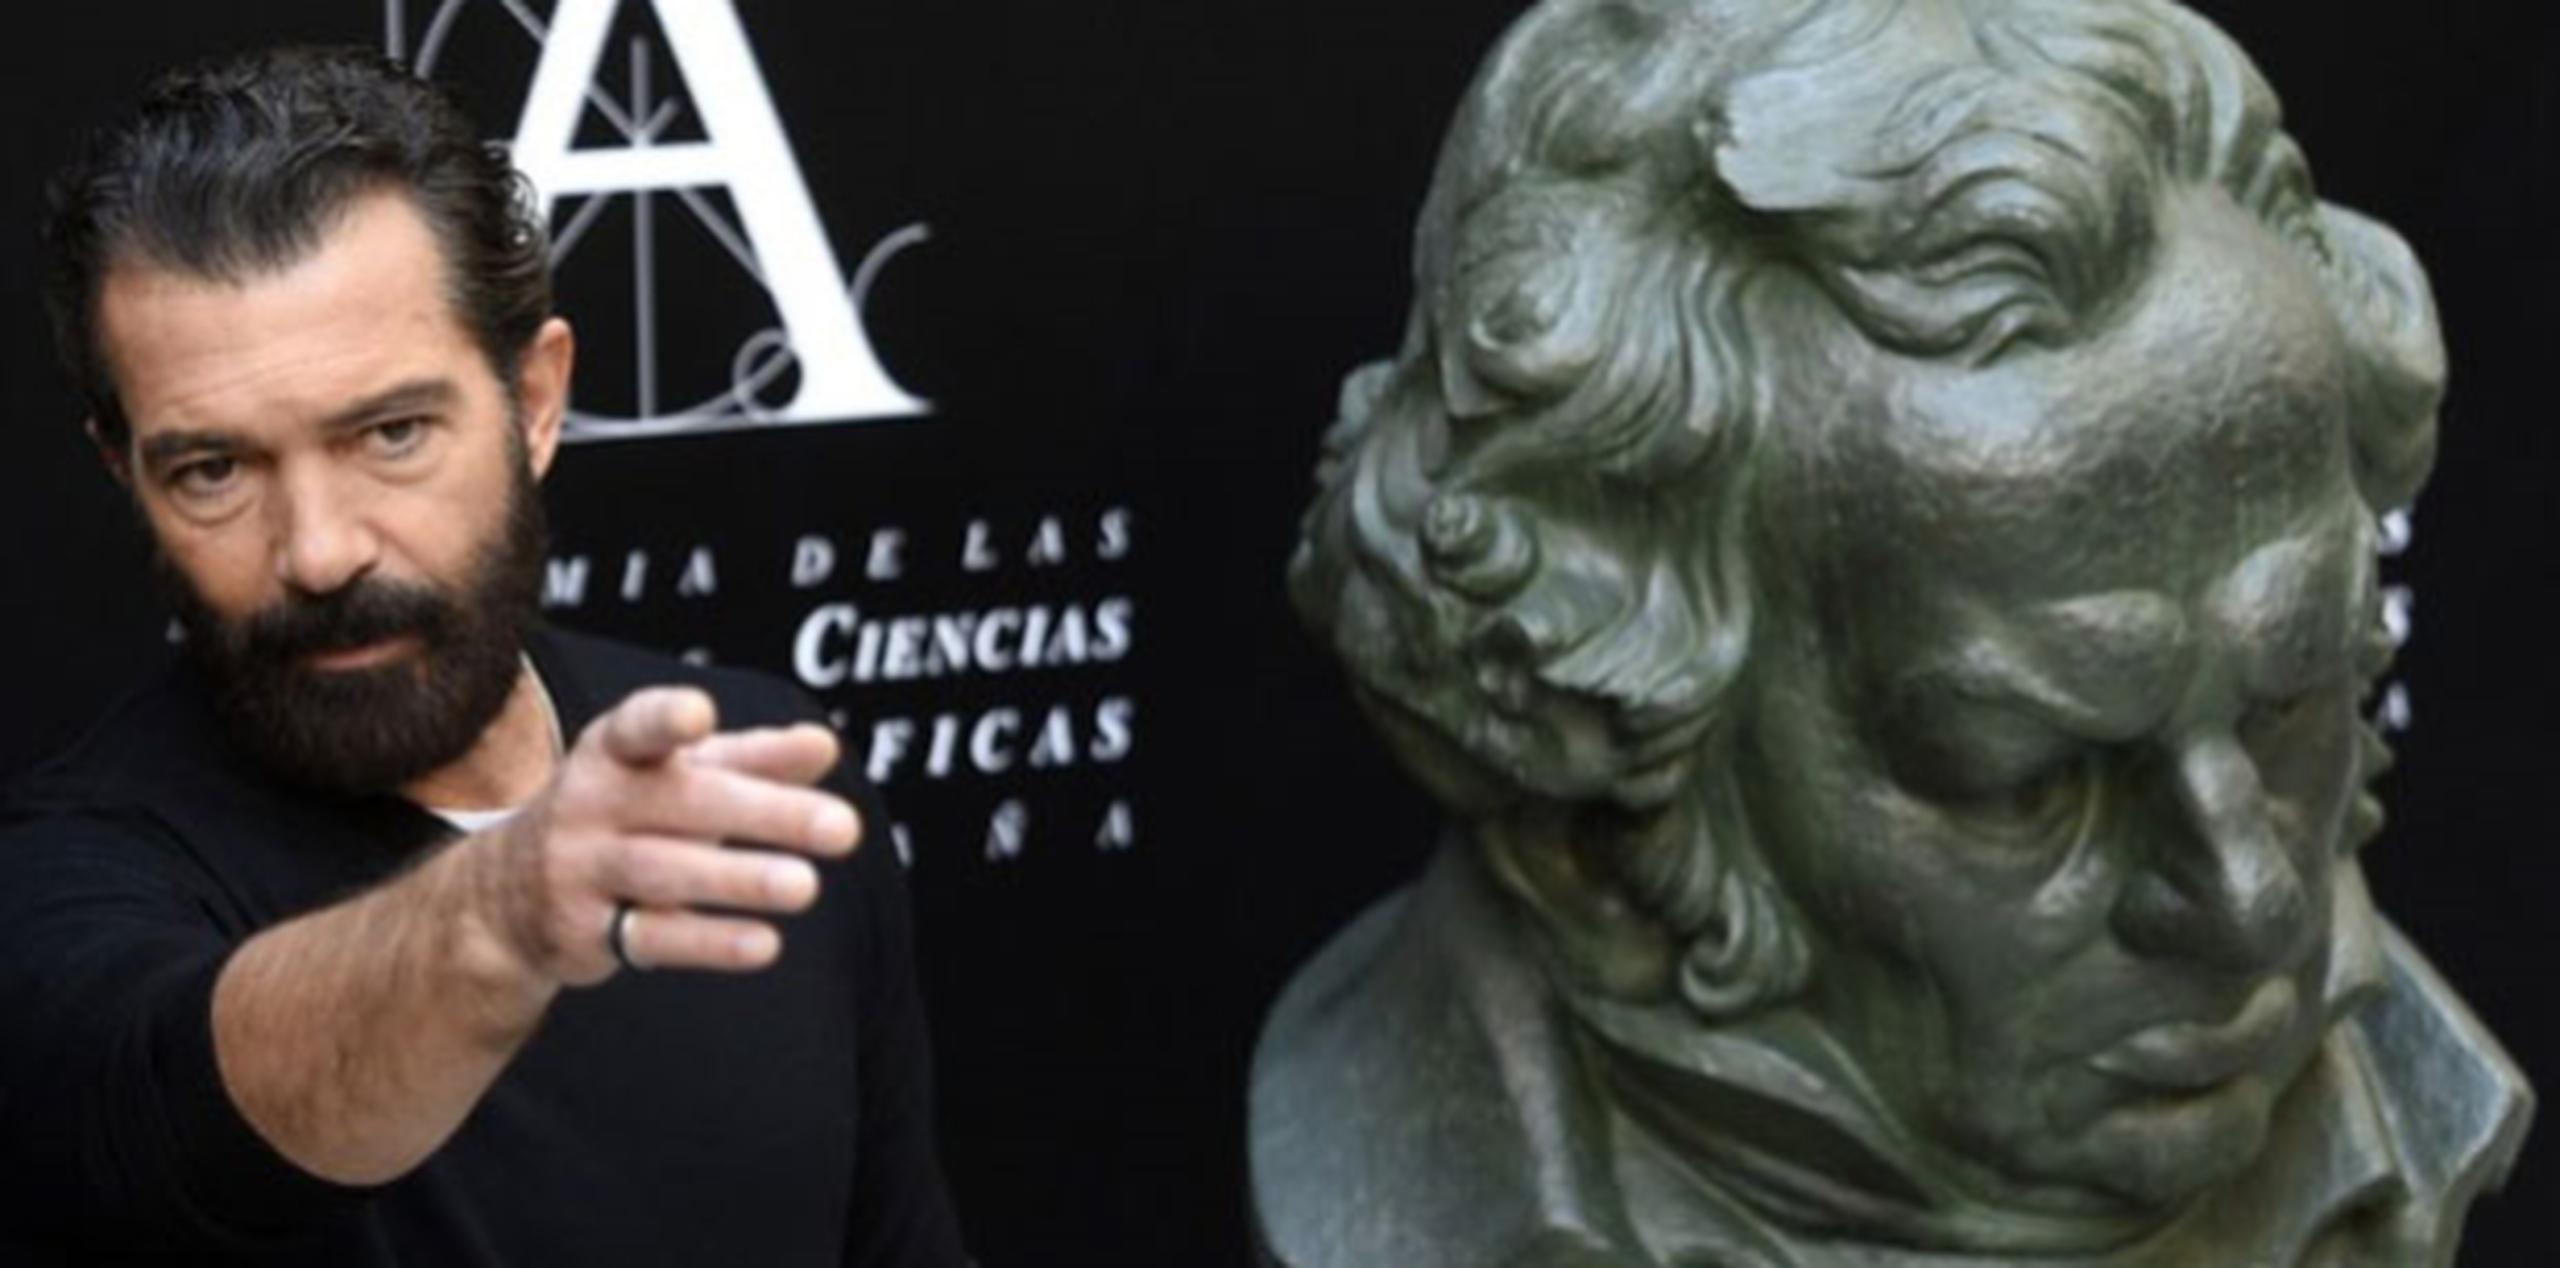 Banderas, de 54 años, compareció ante la prensa en la Academia Española de Cine días después de anunciarse que recibirá el Goya de honor en reconocimiento a toda su carrera.(AP)